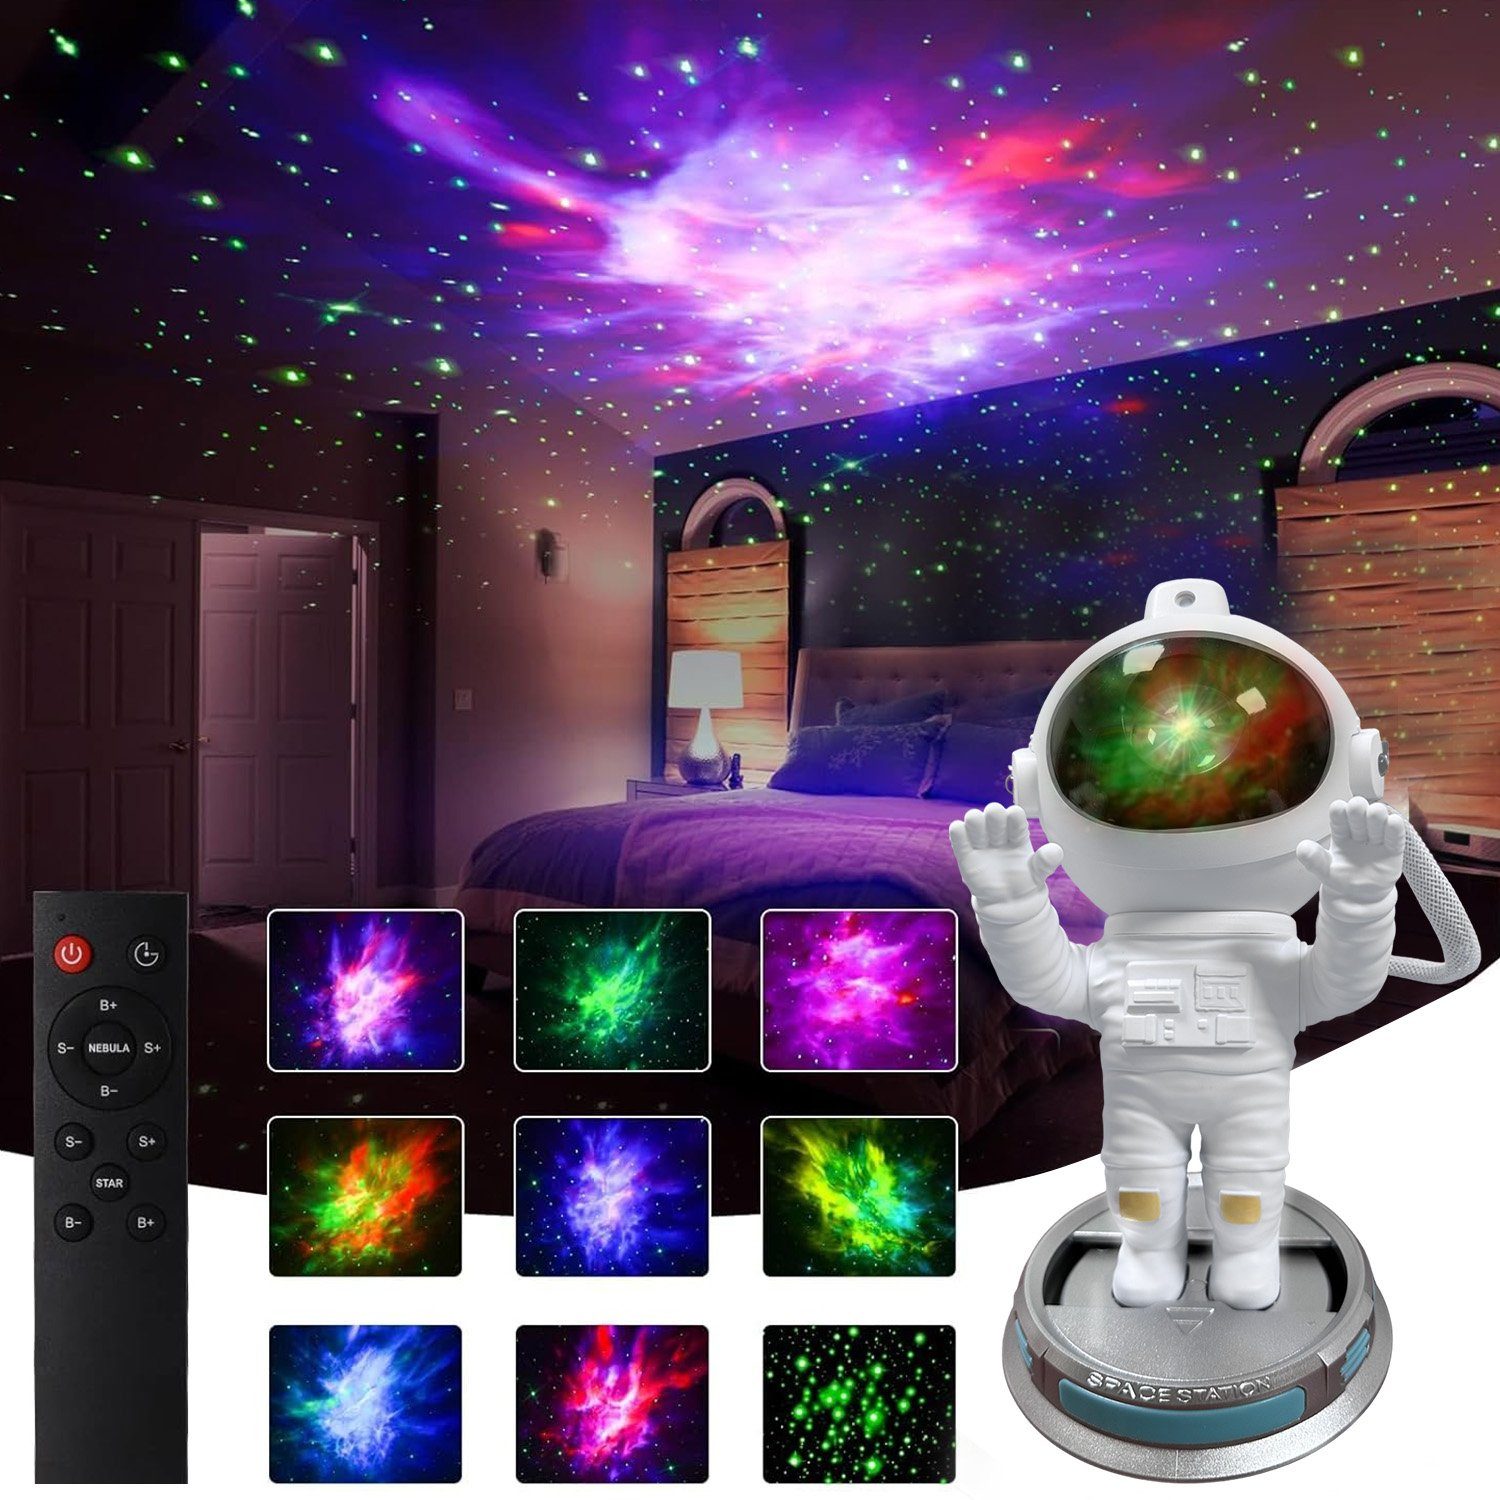 https://i.otto.de/i/otto/30fe9535-07fe-4990-9872-64148bd30d2c/mupoo-led-sternenhimmel-led-nachttischlampe-sternenhimmel-projektionslampe-galaxy-projector-fernbedienung-timer-360-verstellbar-led-nachtlicht-astronaut-projektor-zwei-haende-erhoben.jpg?$formatz$